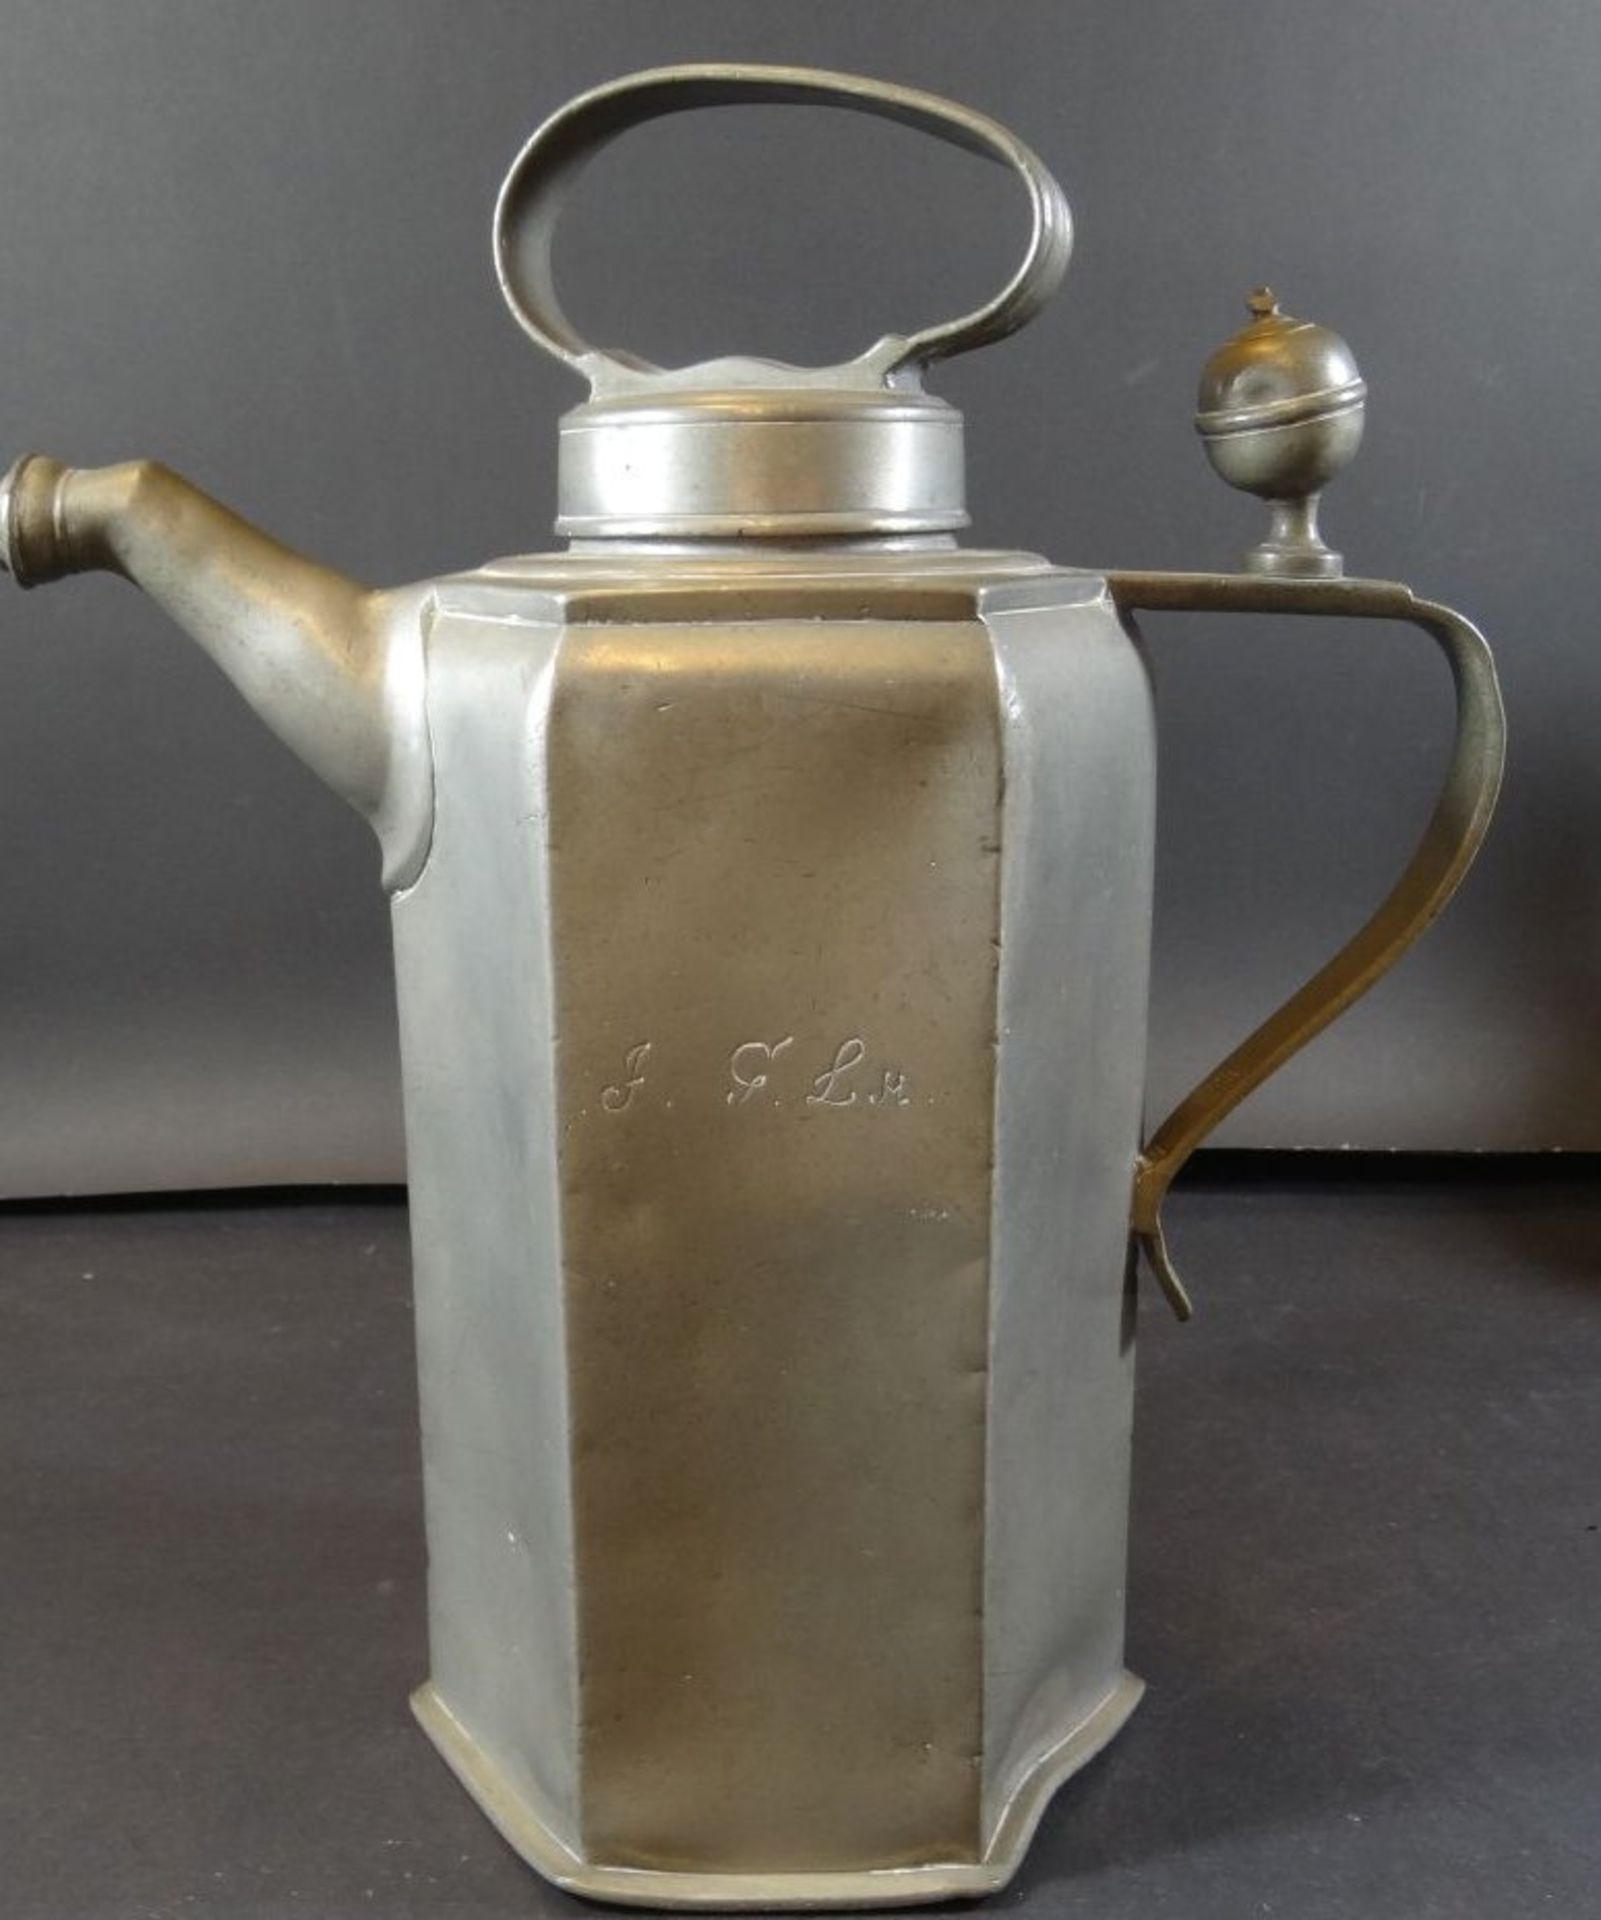 gr. Zinn-Kanne mit Schraubdeckel um 1850, Gebrauchsspuren, Deckelknauf fehlt, H-32 cm